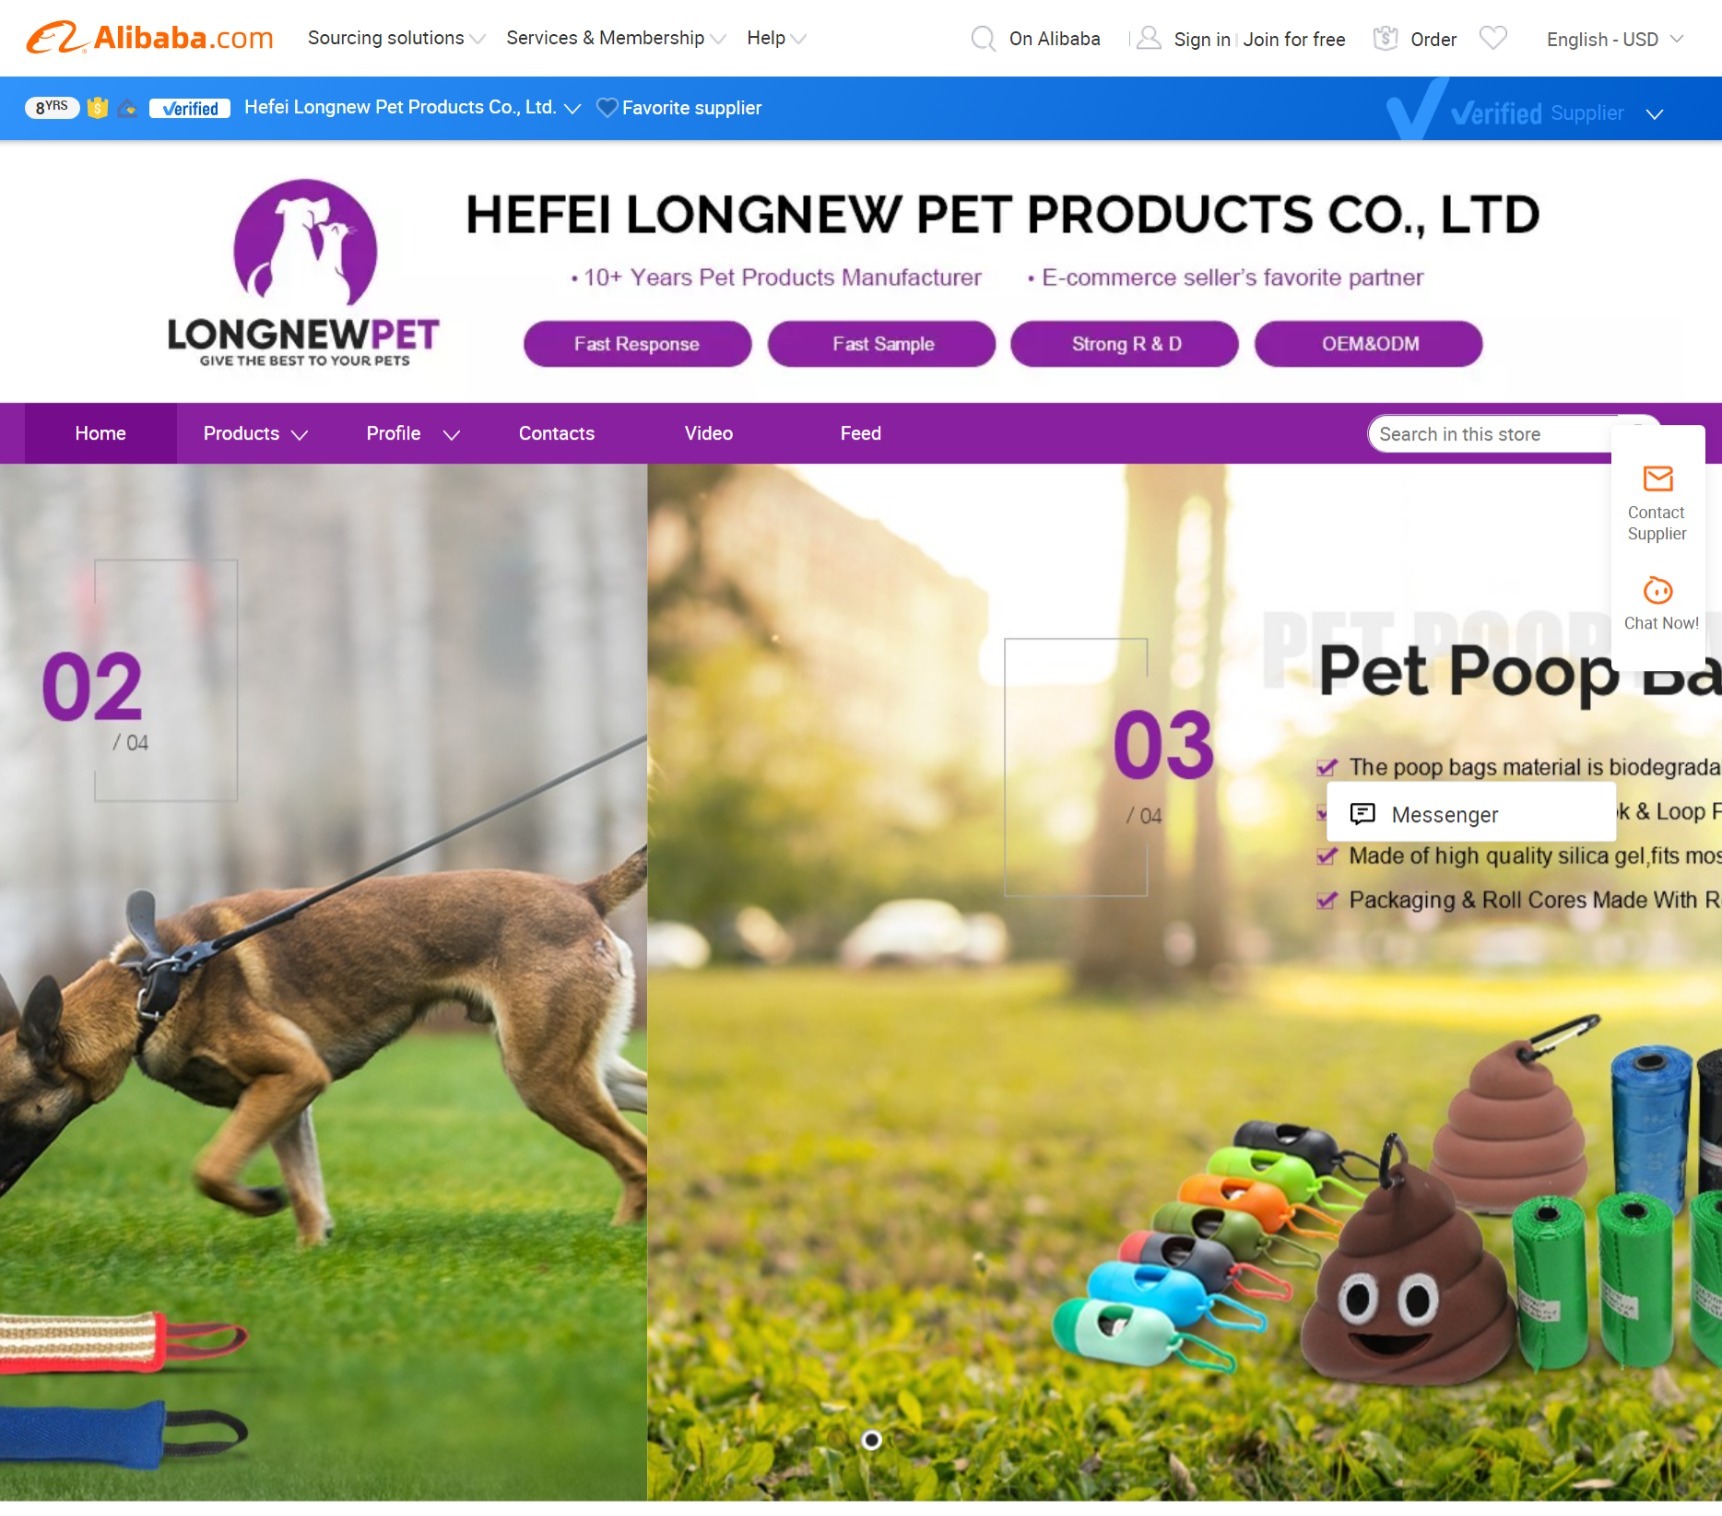 Hefei Longnew Pet Products Co., Ltd website